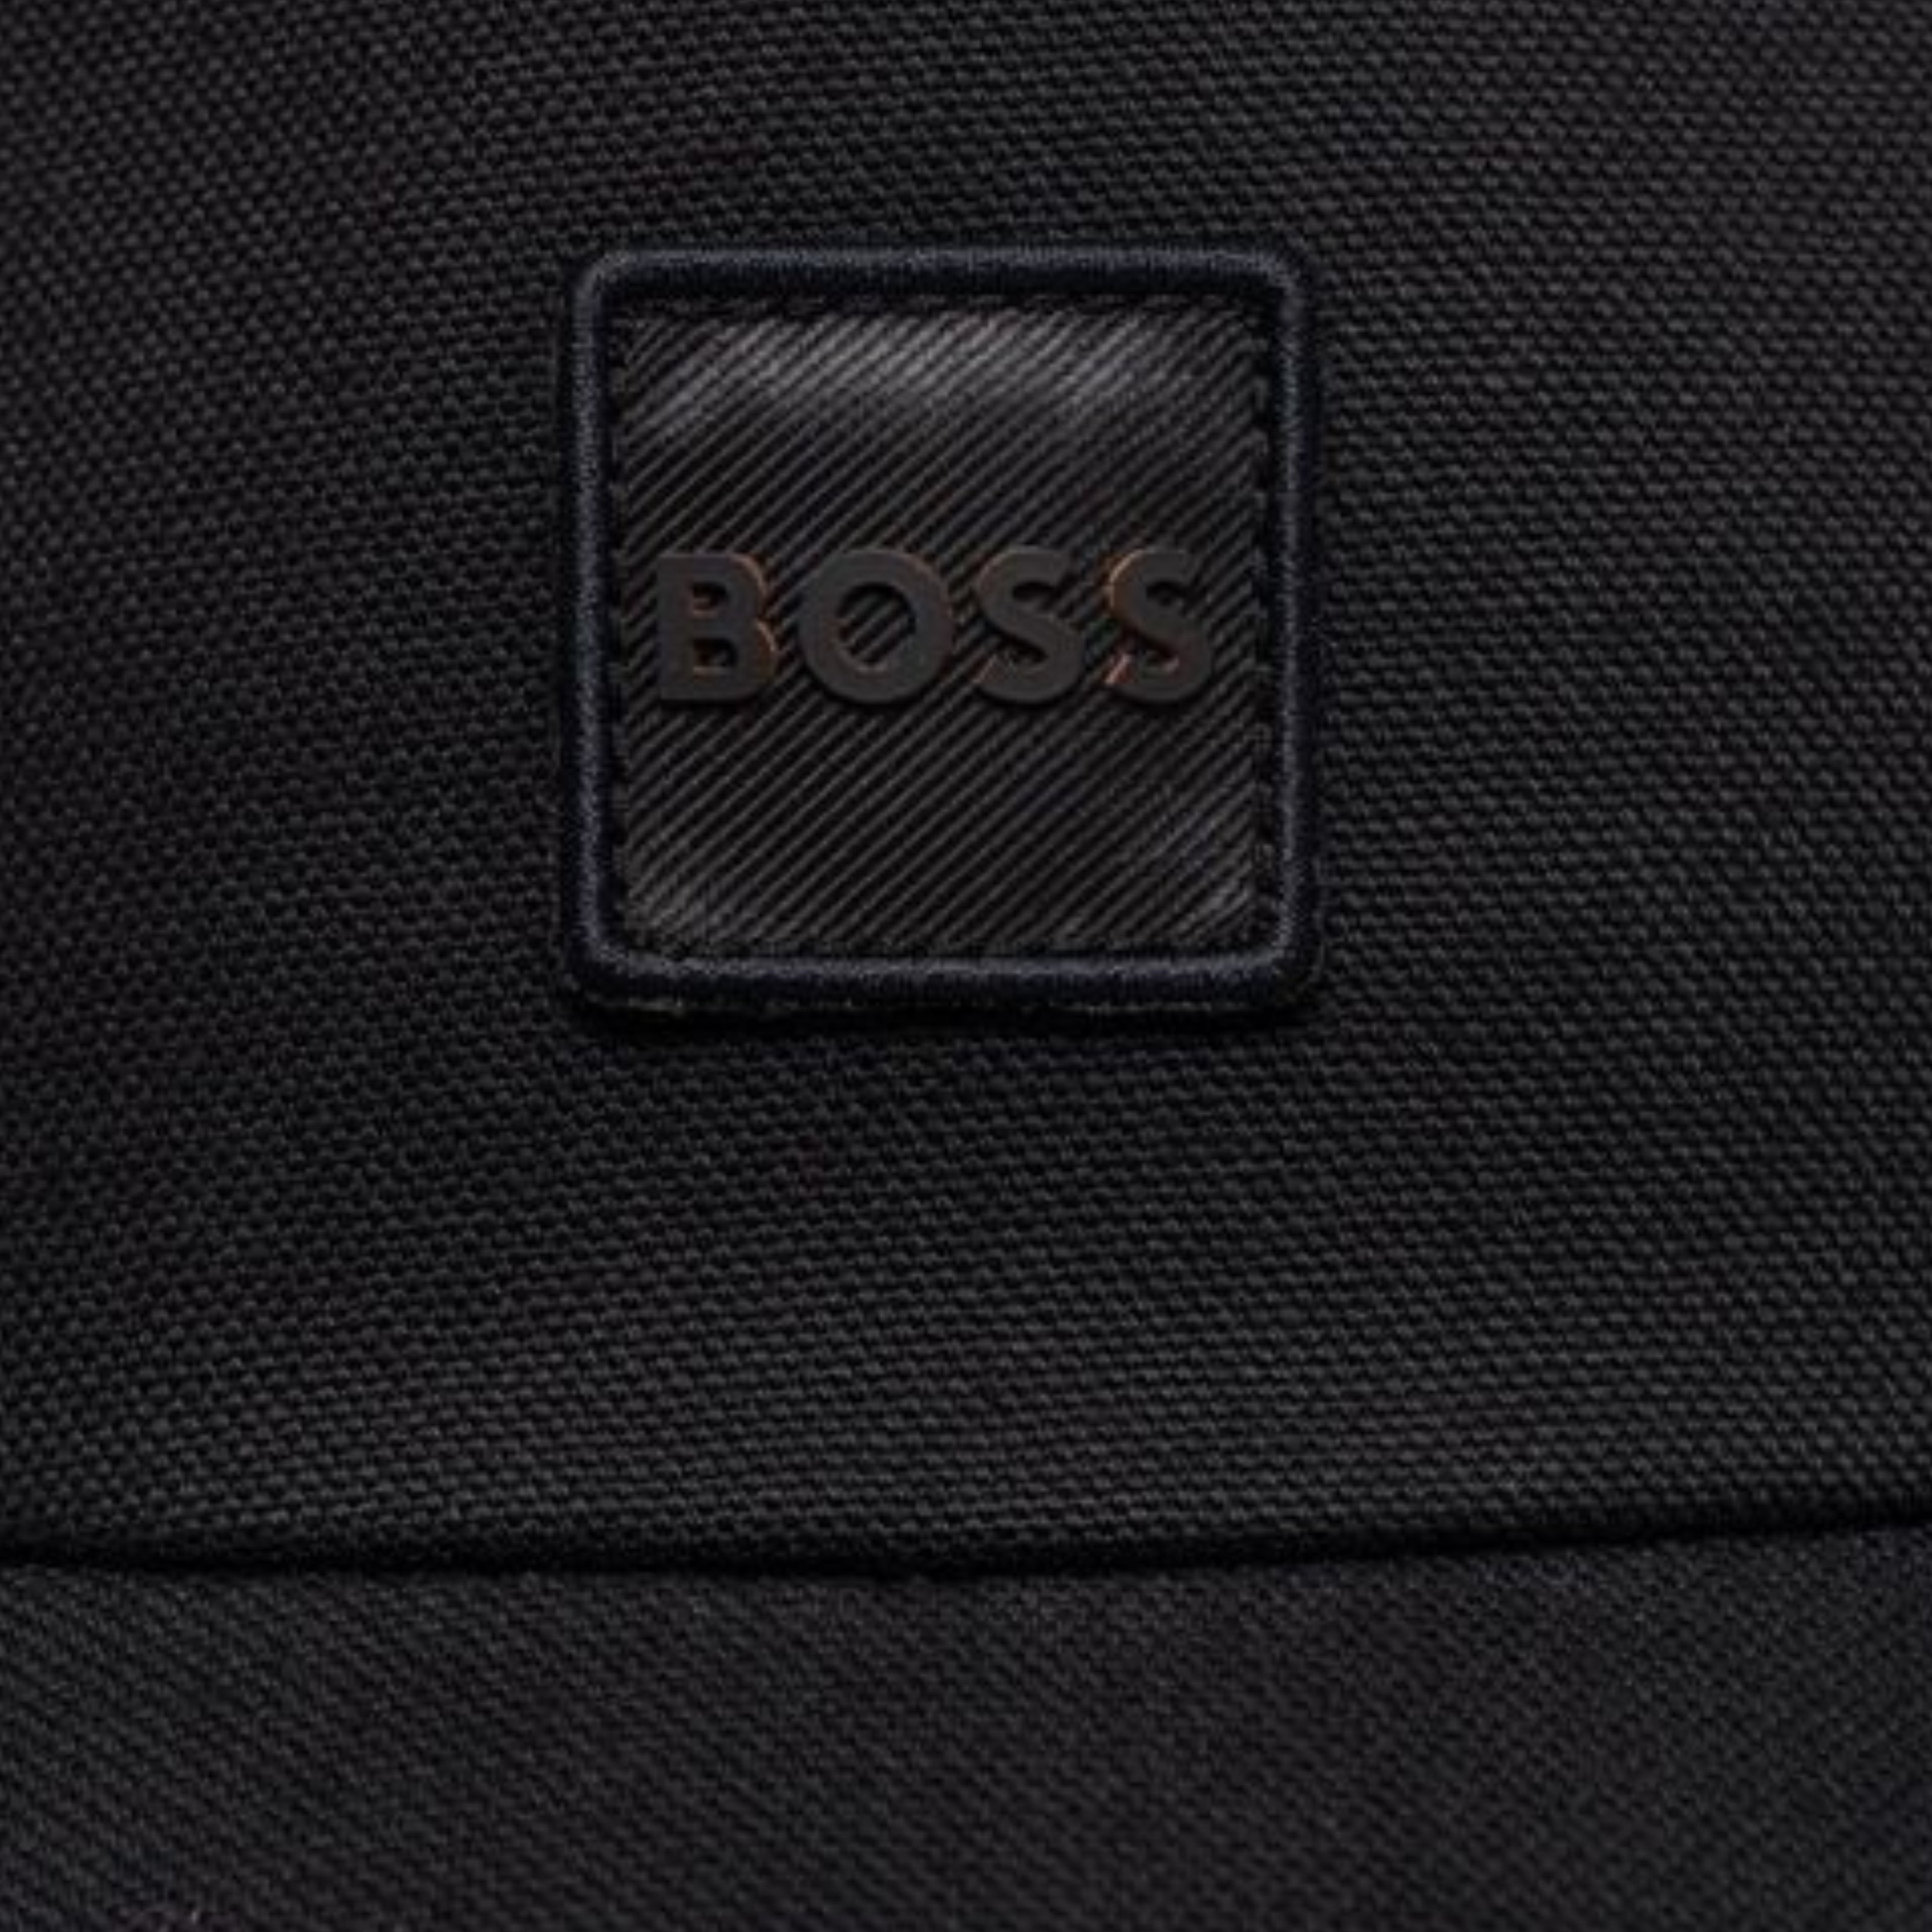 Boss Men Cap